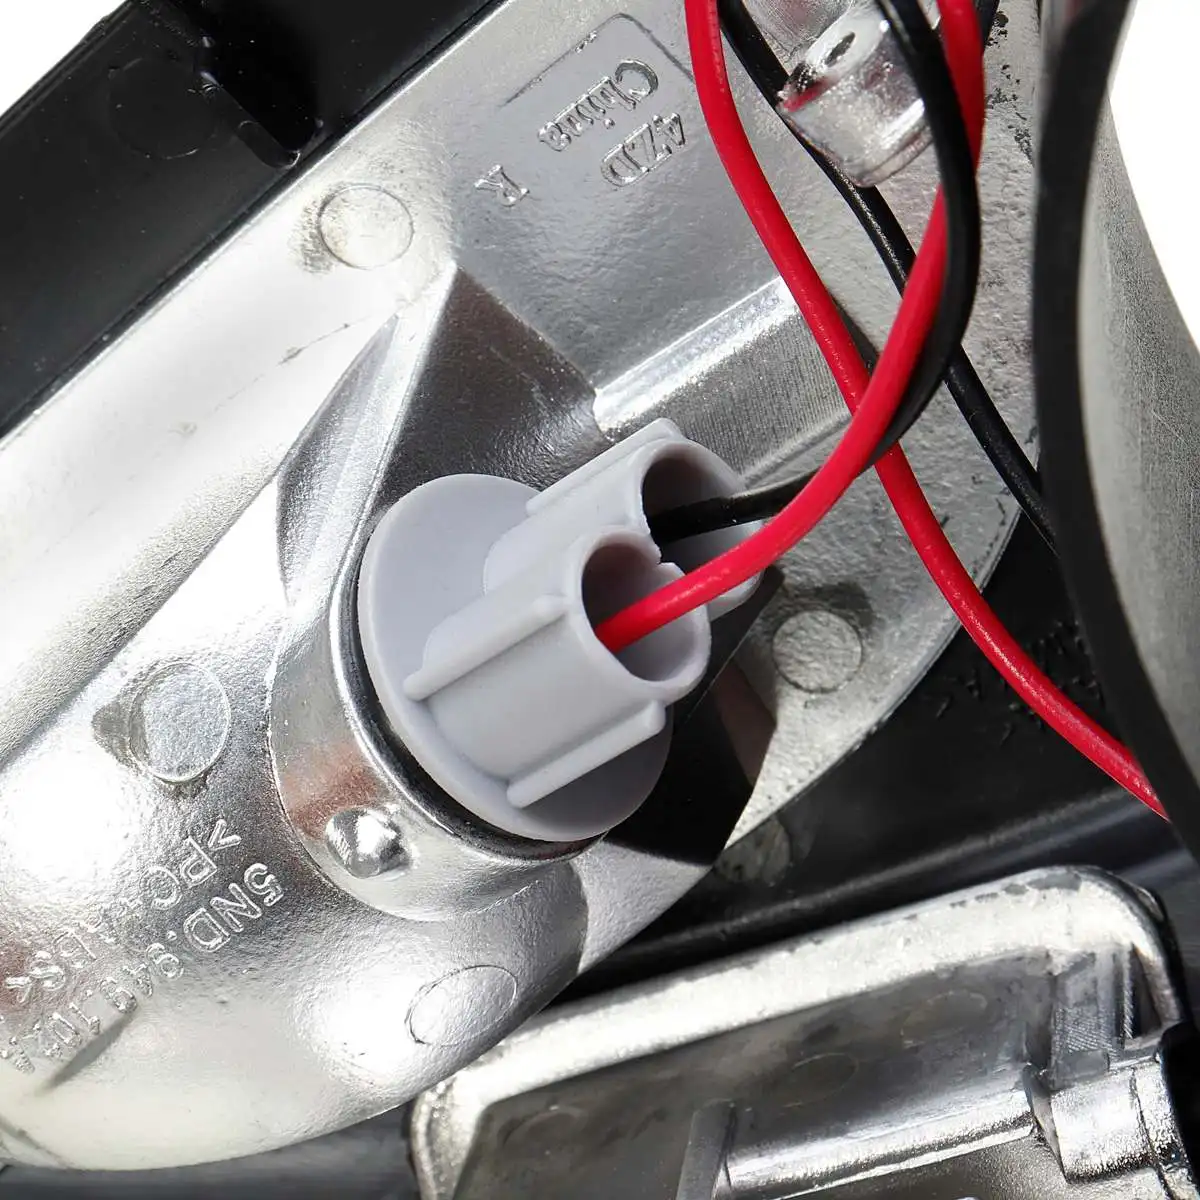 Автомобильный левый и правый указатель поворота бокового зеркала светодиодный ретранслятор светильник для VW Sharan 2012 2013 Tiguan 2007 2008 2009